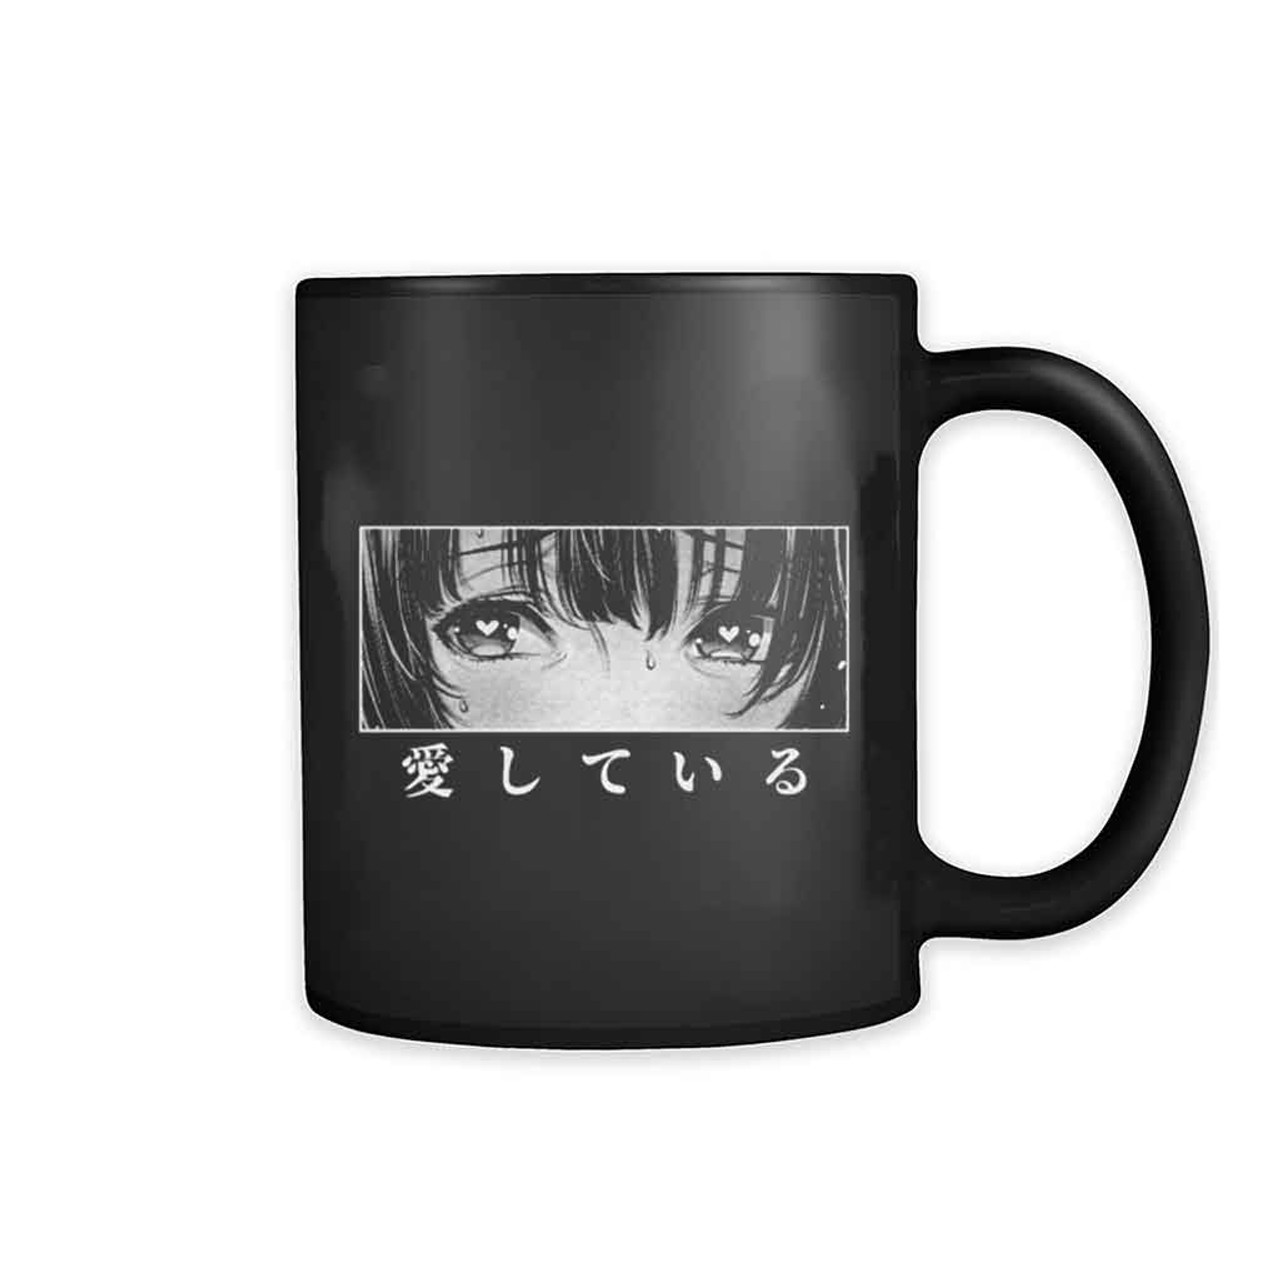 Anime Mug, Anime Coffee Mug, Anime Fan Gift, SC Cup, Manga Mug